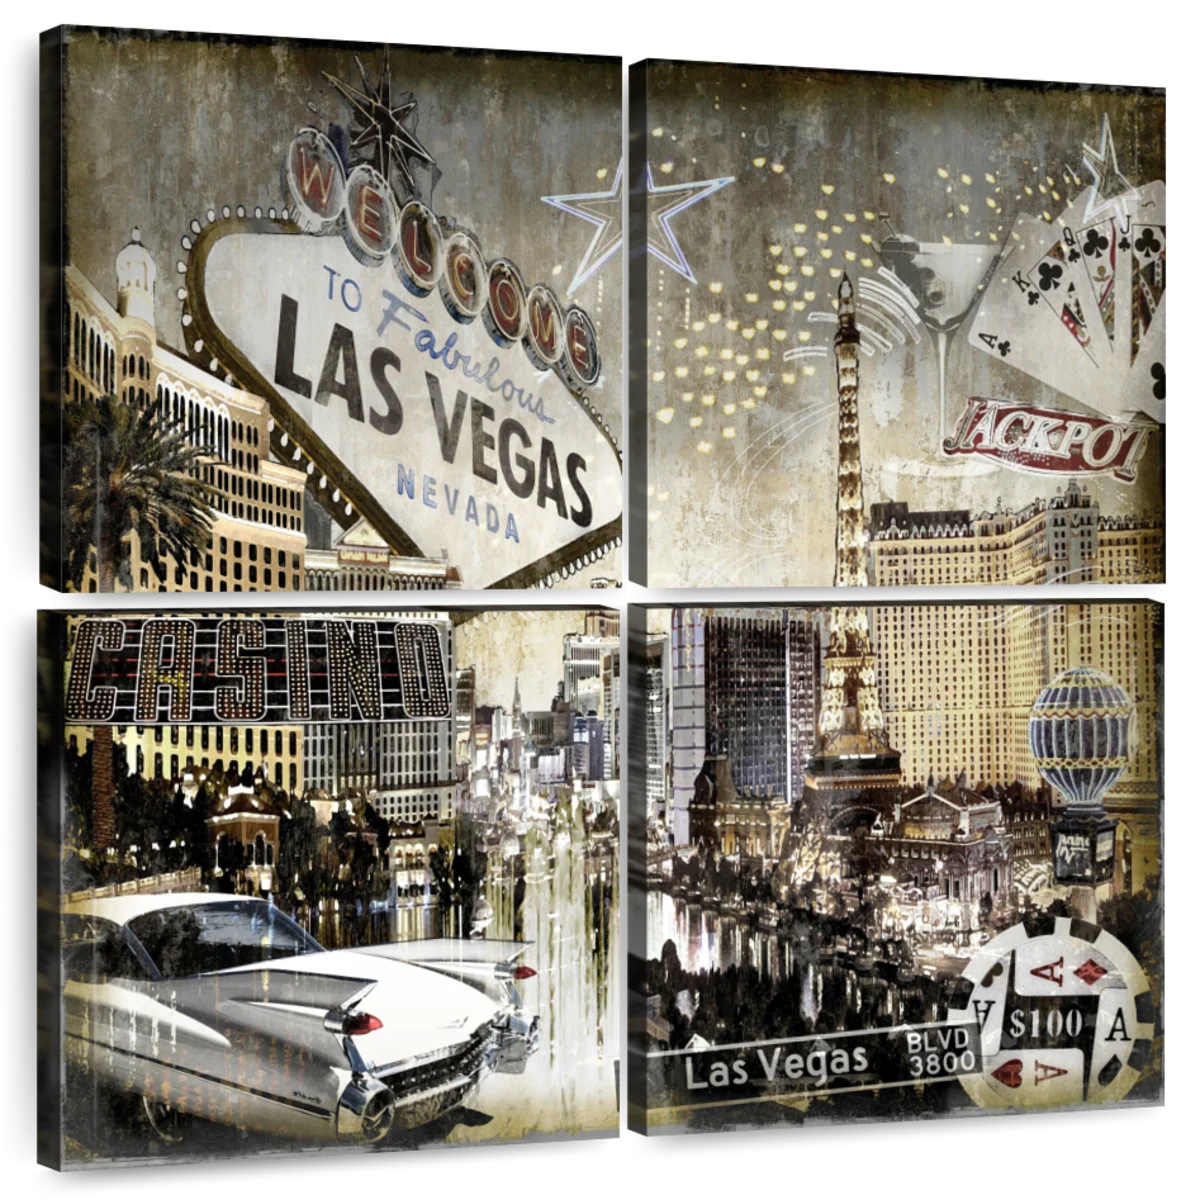 Las Vegas Posters & Wall Art Prints